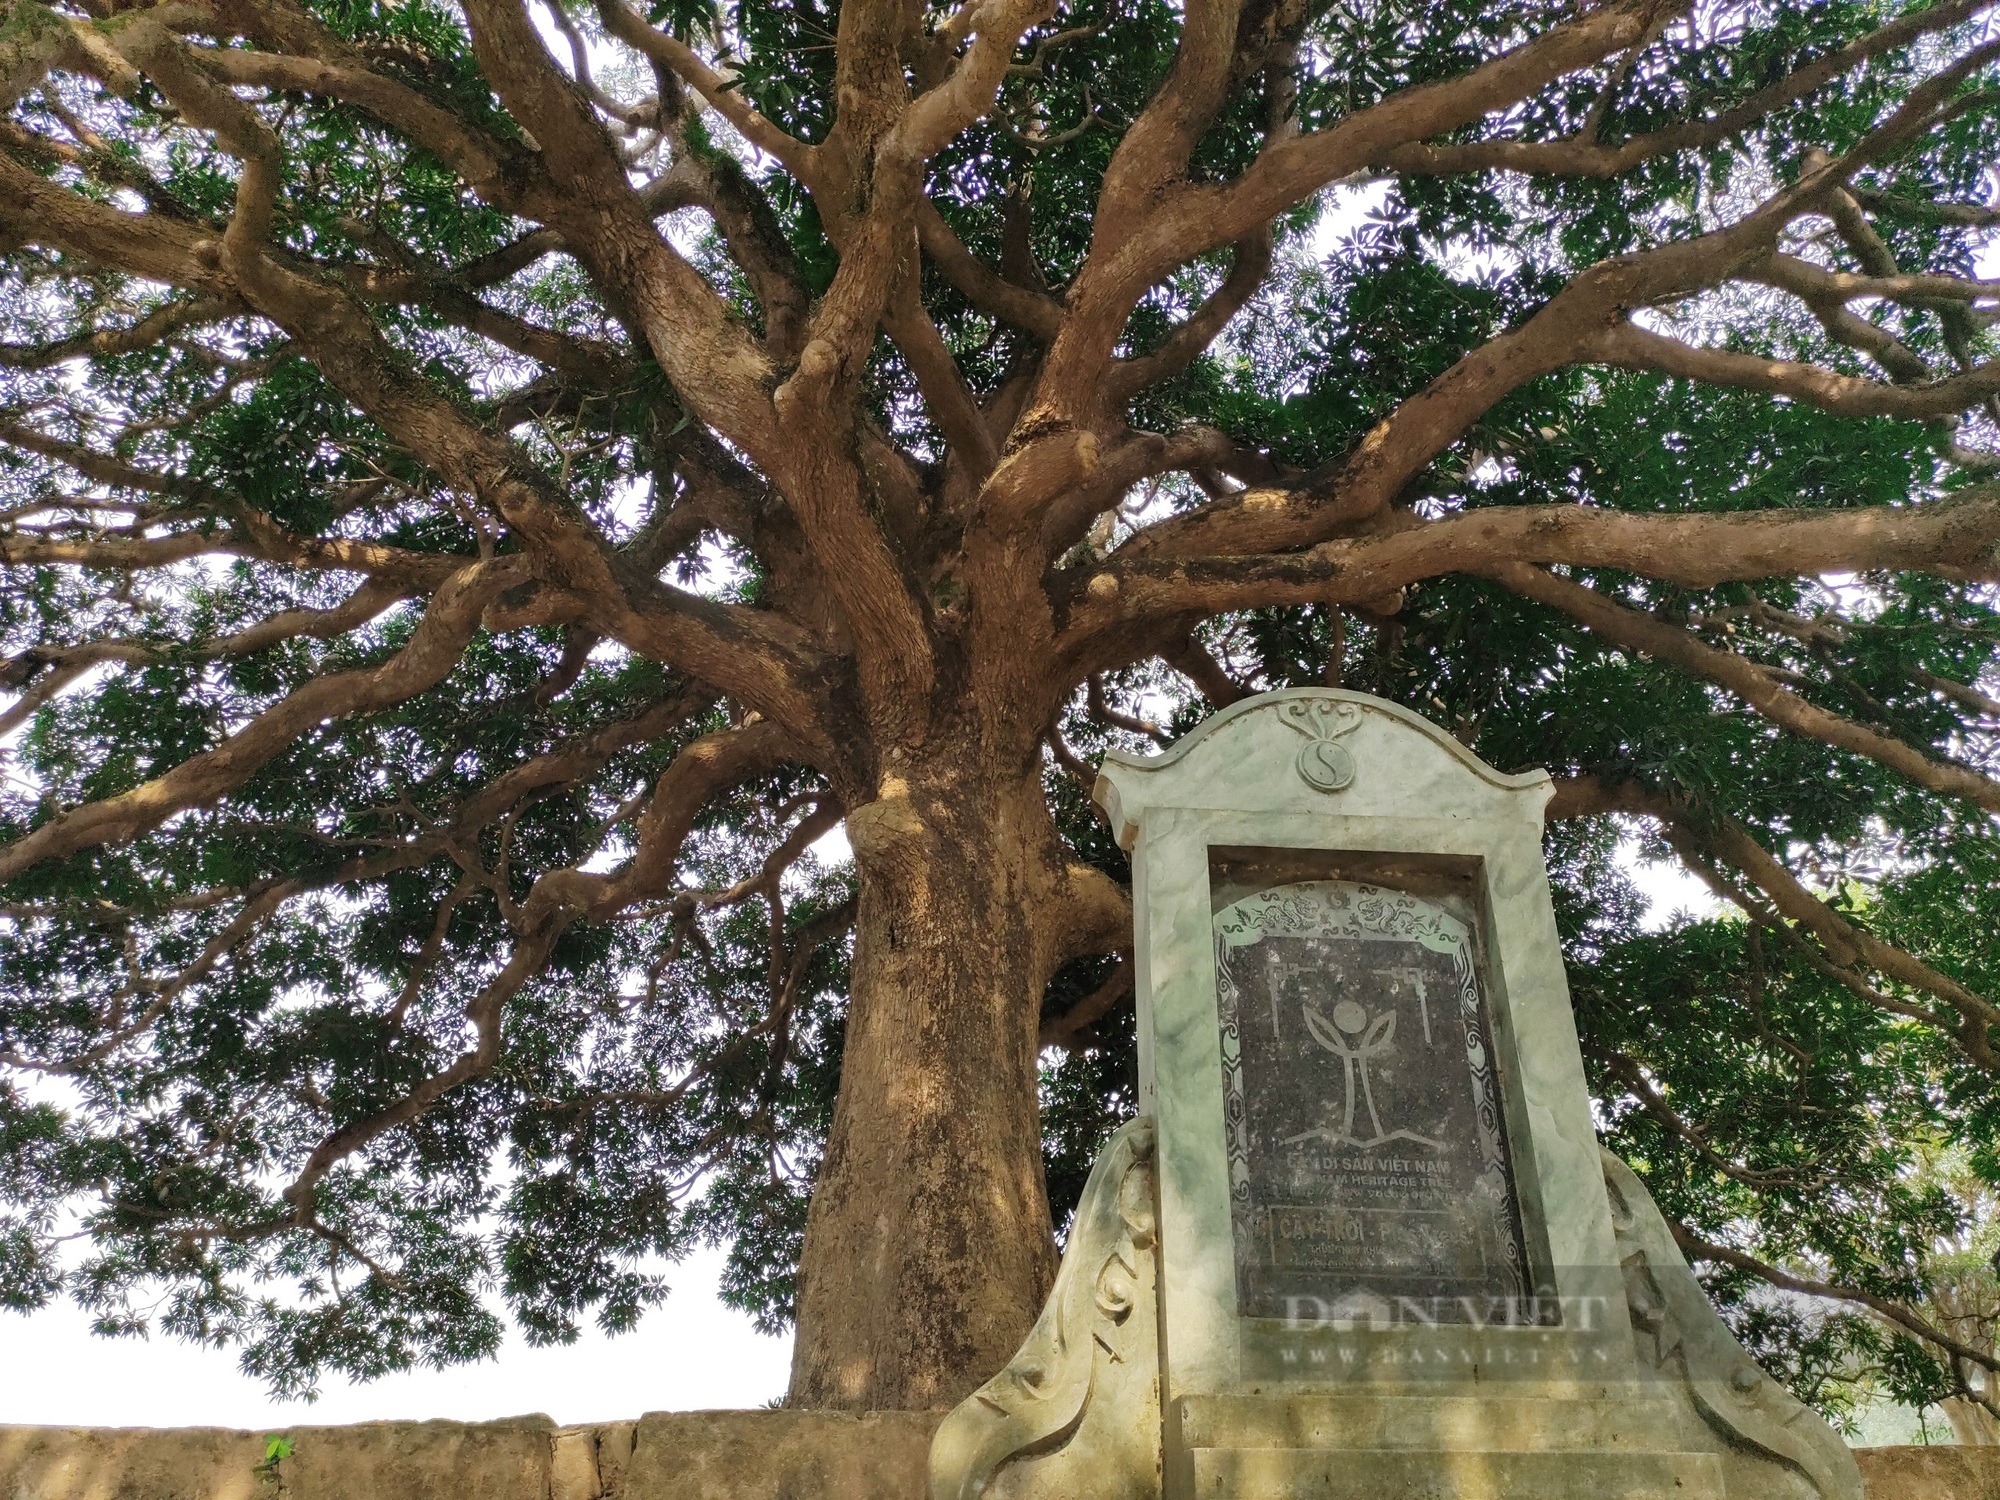 Cây trôi cổ thụ gần 800 năm tuổi sai trĩu quả ở Quốc Oai (Hà Nội) - Ảnh 1.